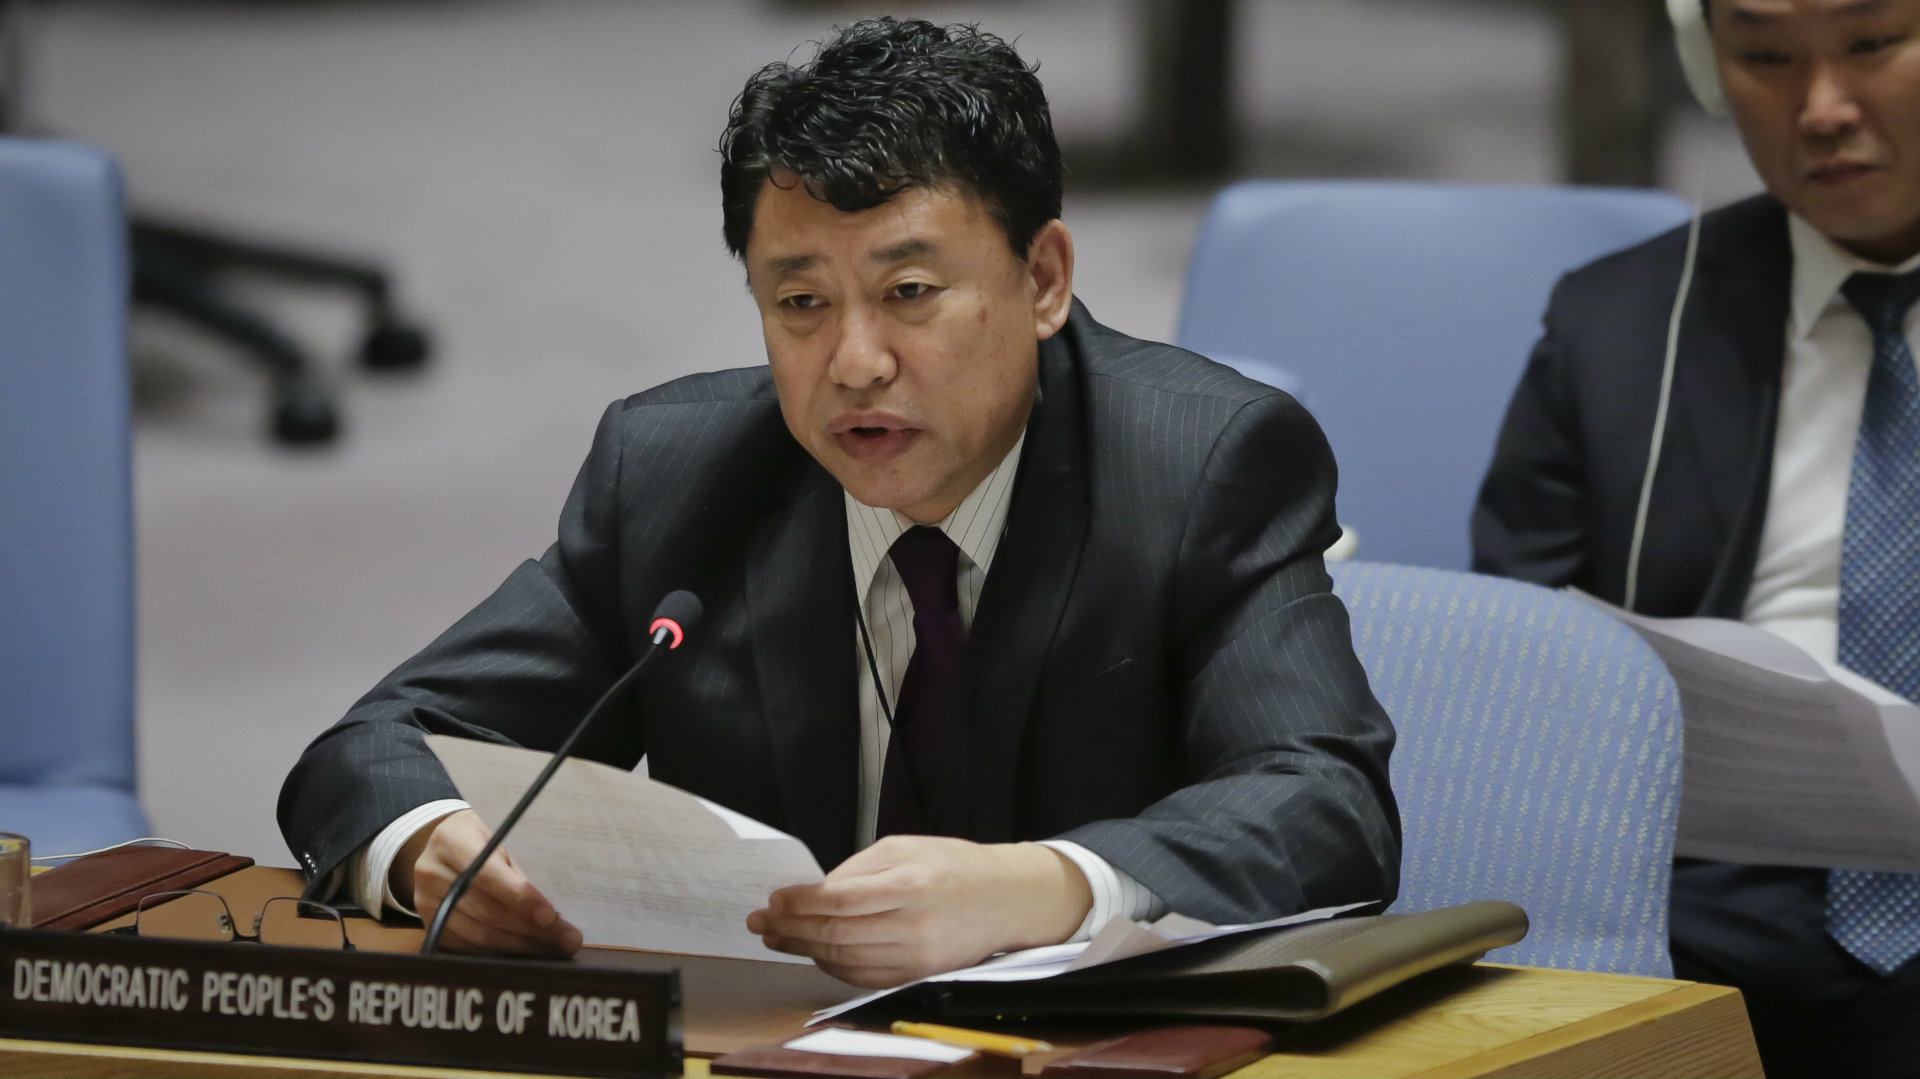 Una guerra nuclear puede estallar en "cualquier momento", asegura un diplomático norcoreano